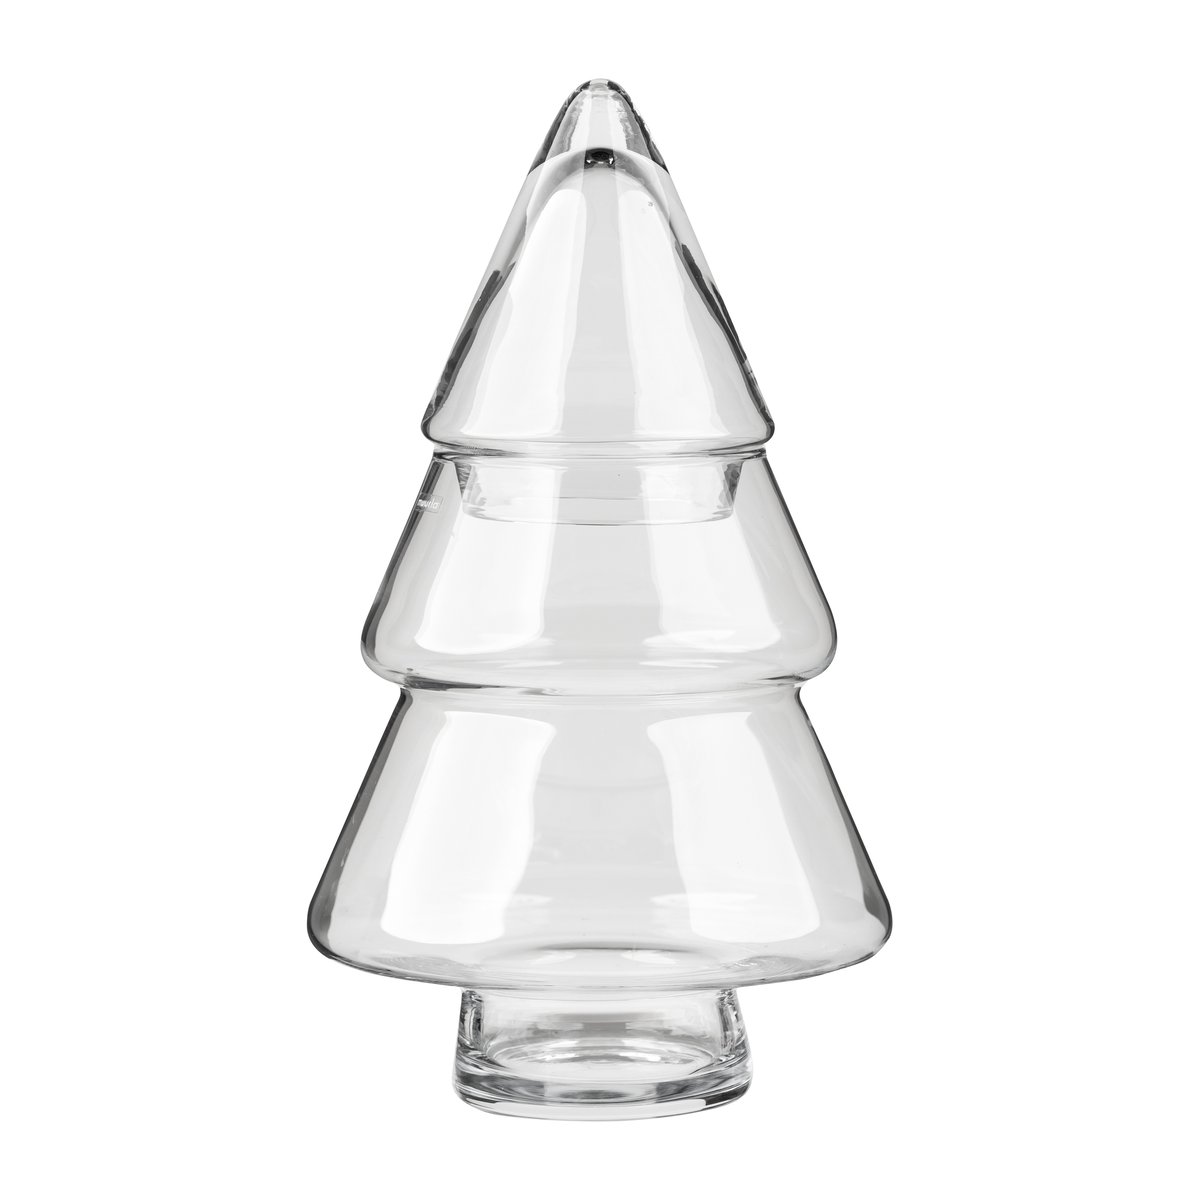 muurla bocal en verre avec couvercle glass tree 30 cm